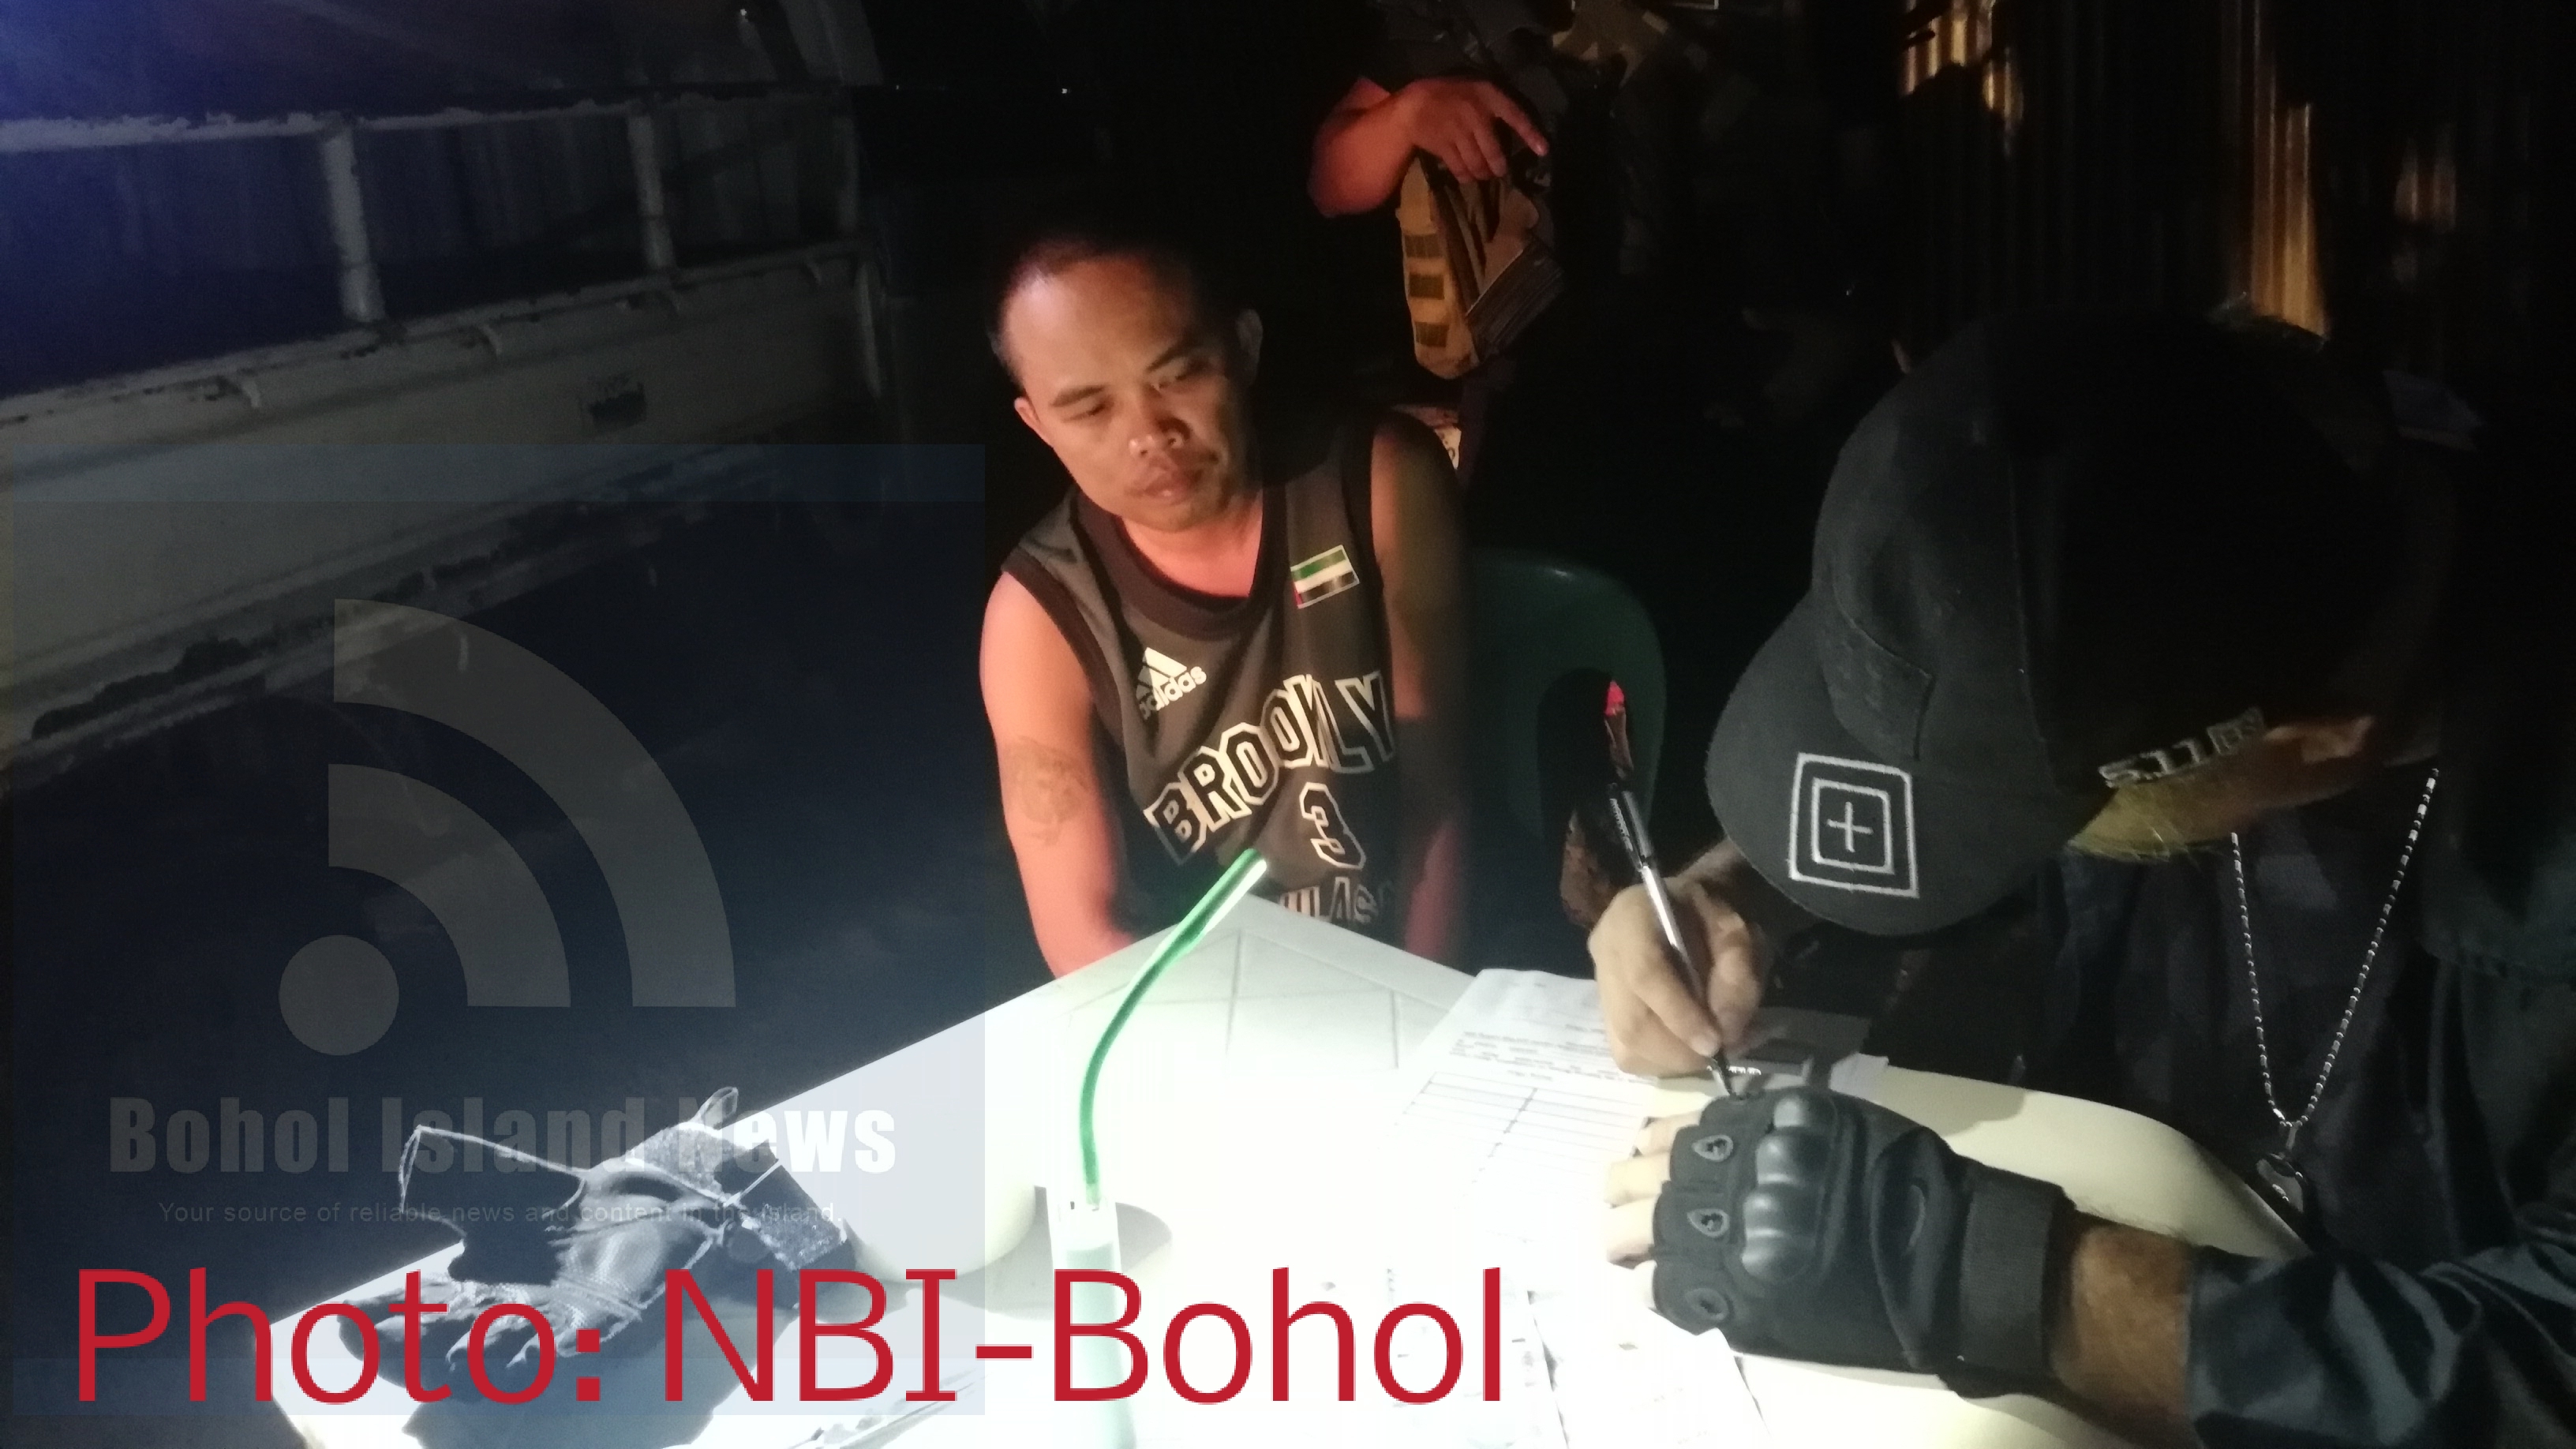 Man with shabu nabbed in Tagbilaran buy-bust